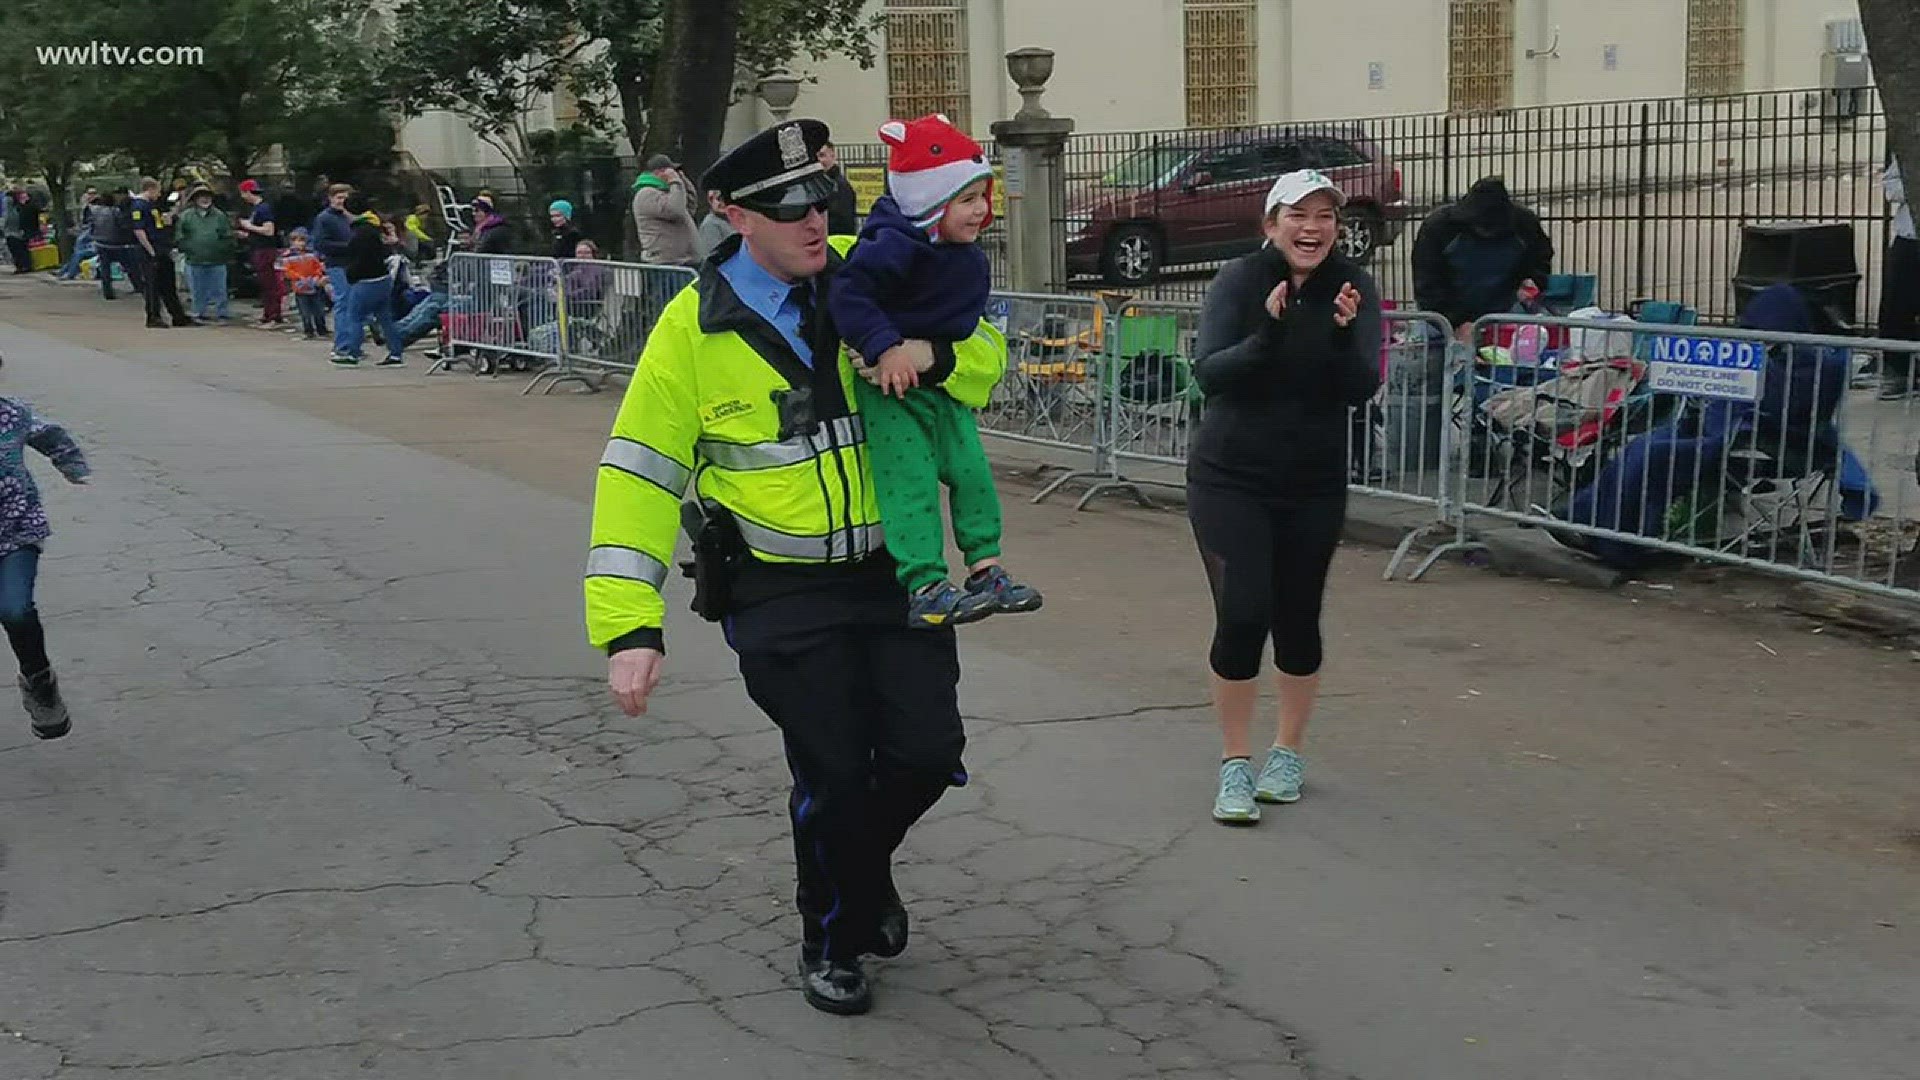 Officer's Mardi Gras parade antics inspire hope